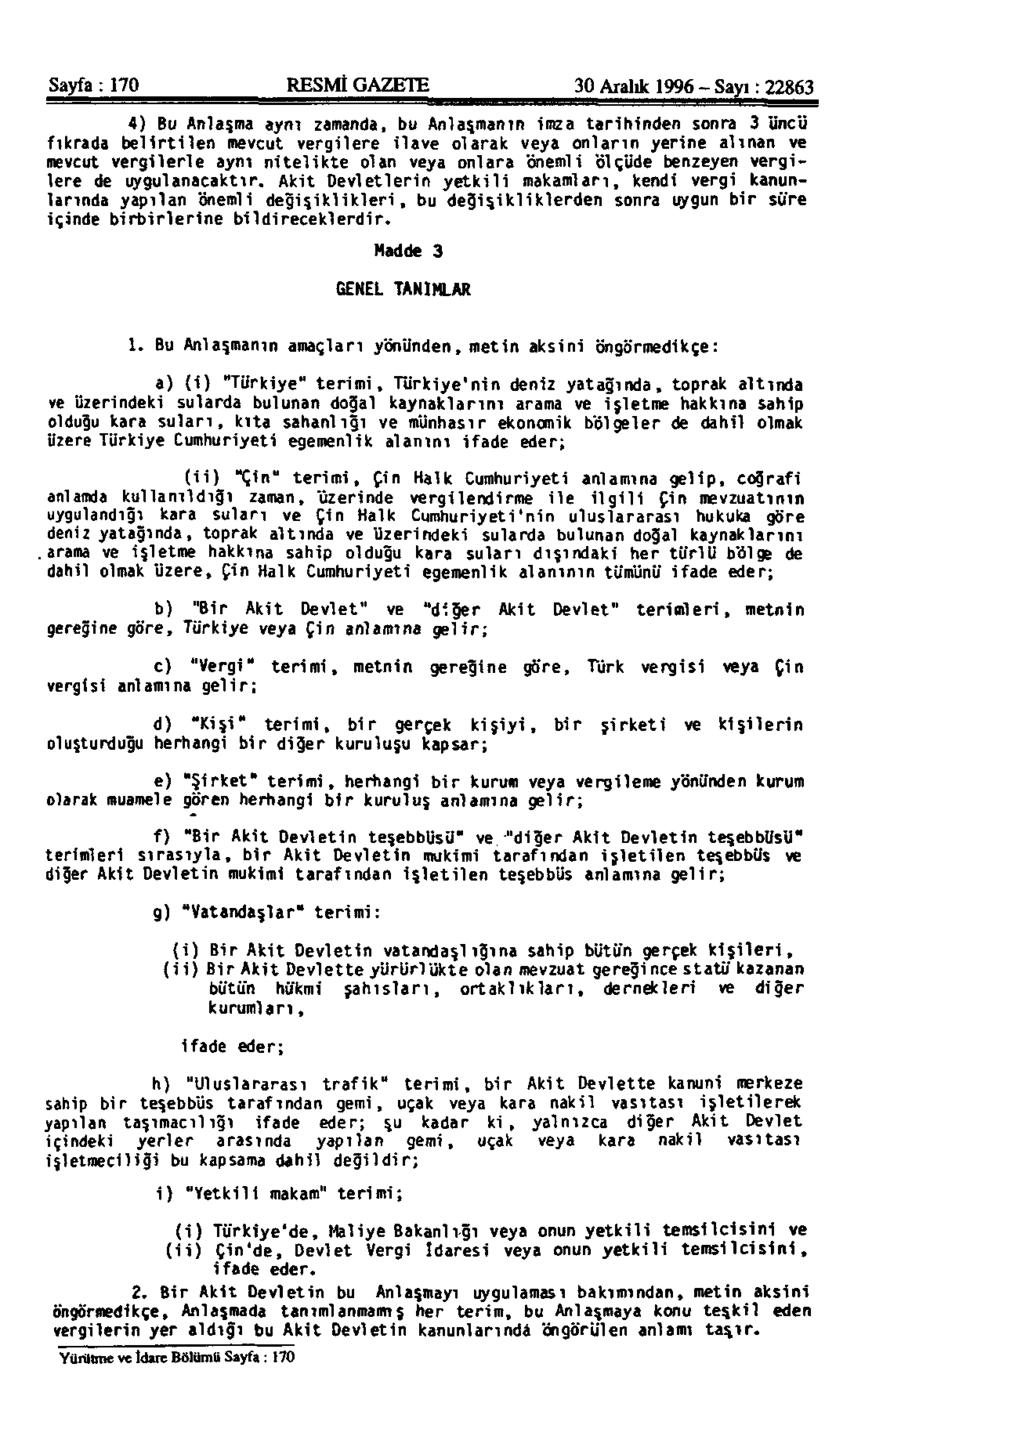 Sayfa: 170 RESMİ GAZETE 30 Aralık 1996 - Sayı: 22863 4) Bu Anlaşma aynı zamanda, bu Anlaşmanın imza tarihinden sonra 3 üncü fıkrada belirtilen mevcut vergilere ilave olarak veya onların yerine alınan